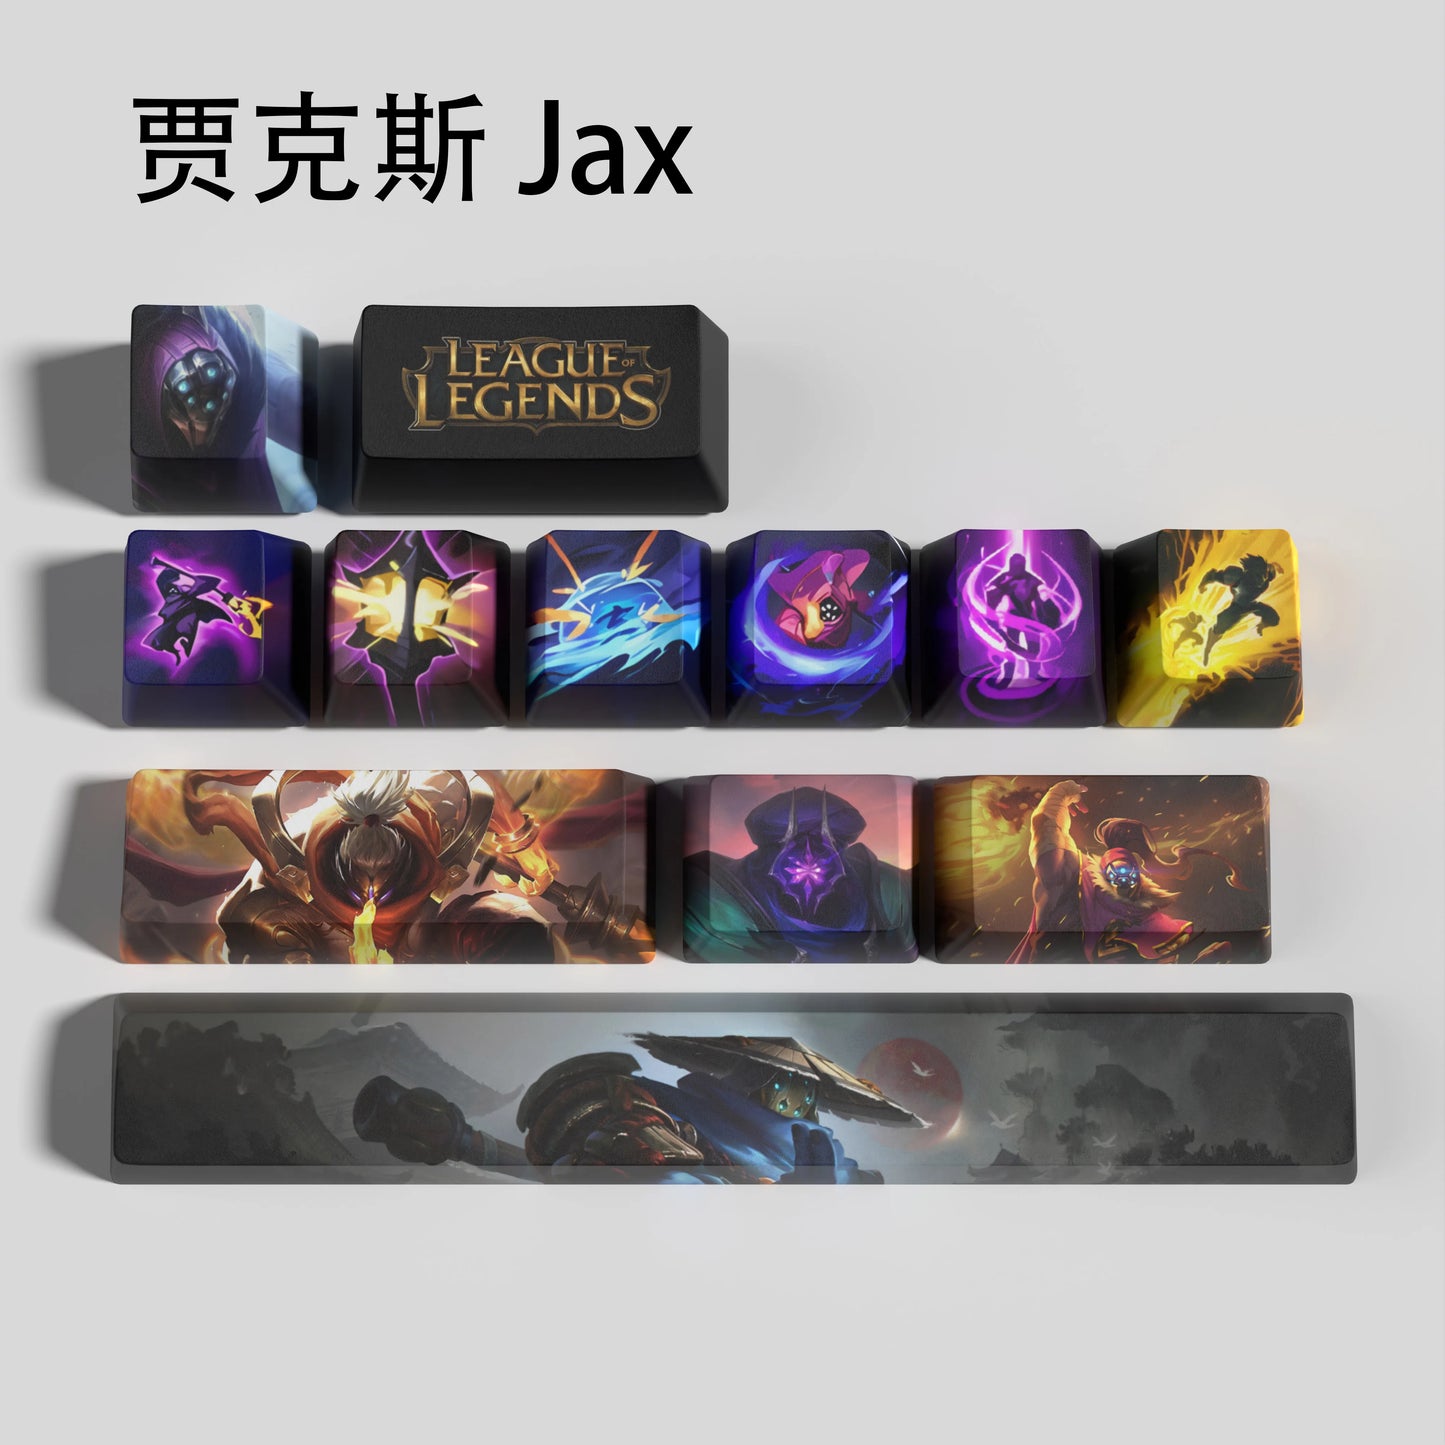 Jax keycaps